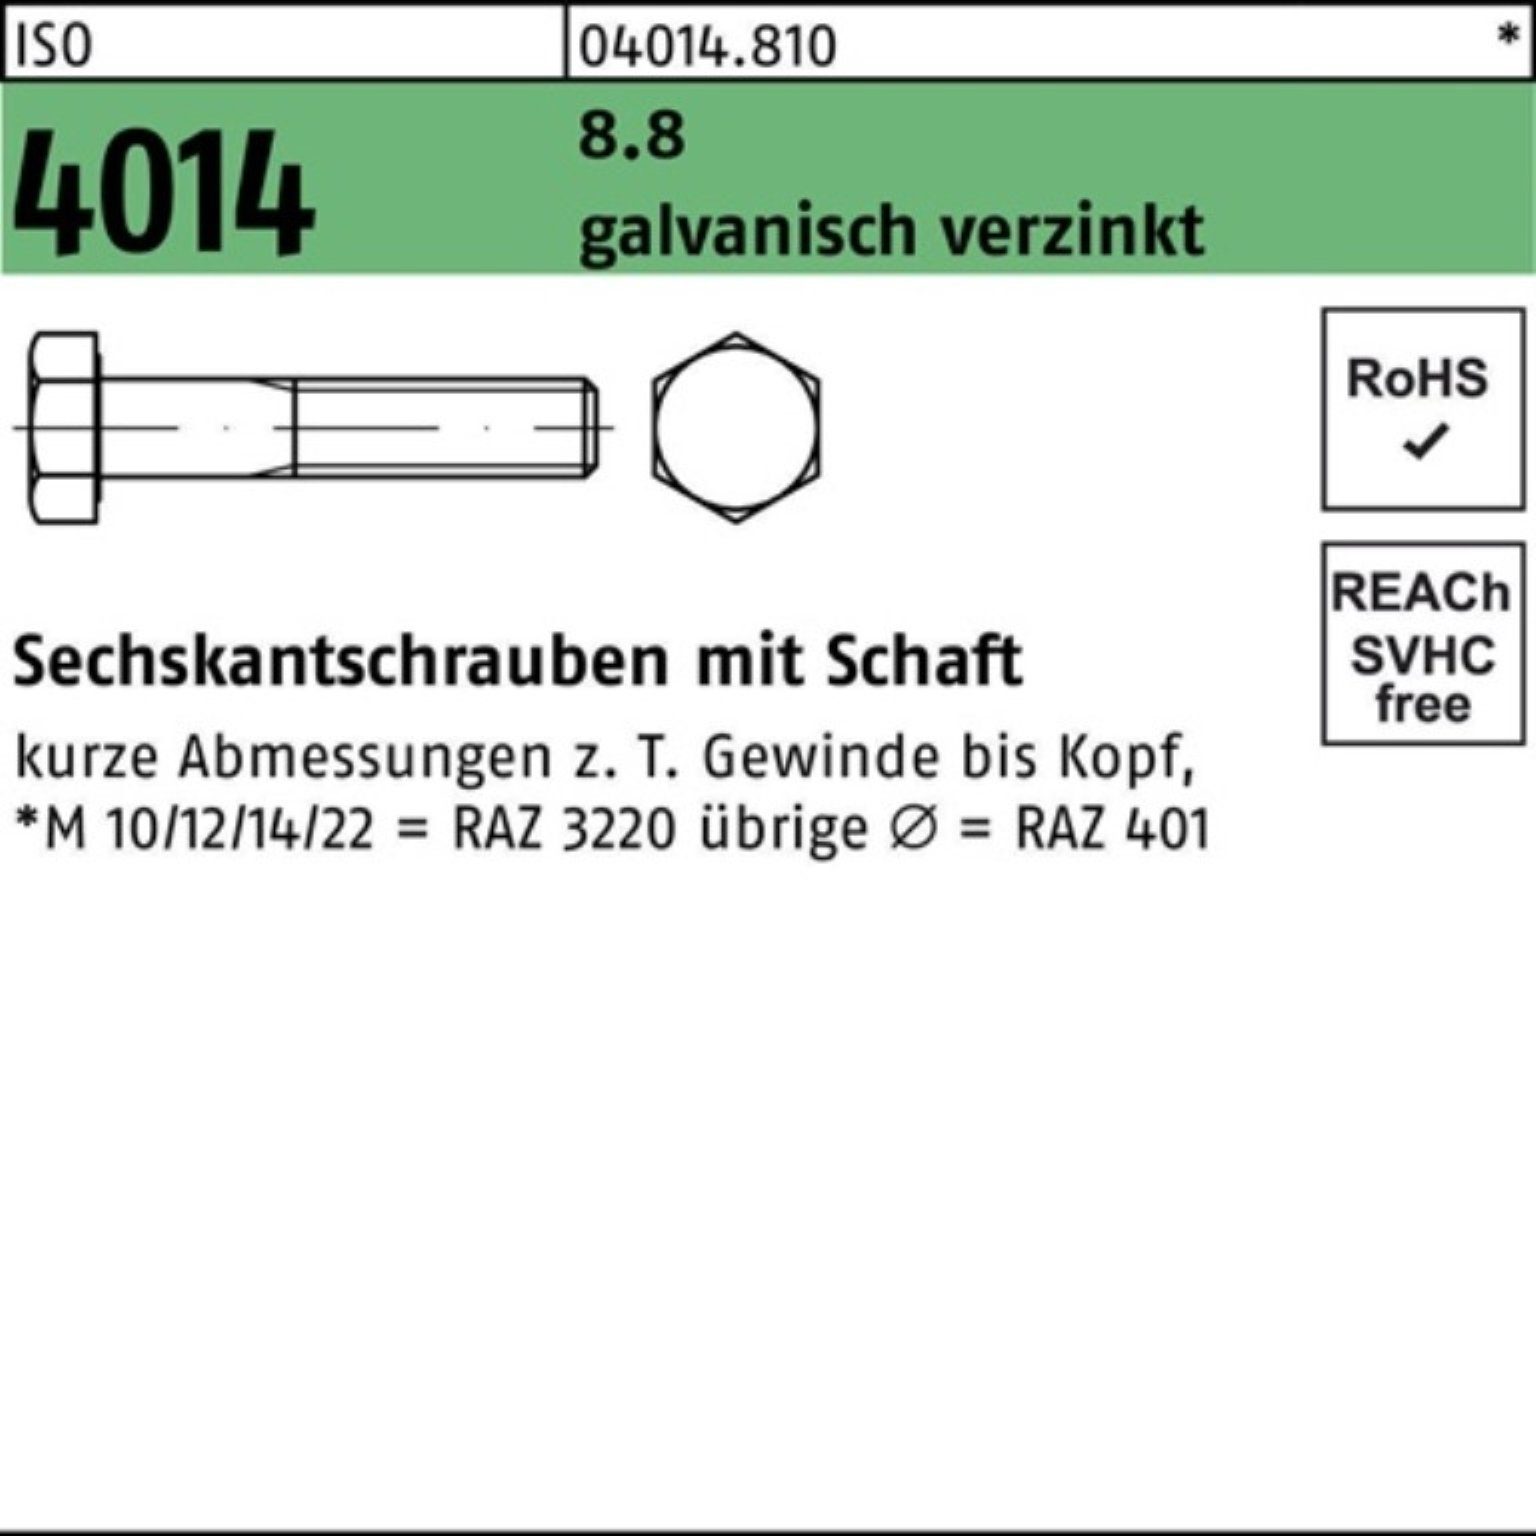 200 8.8 Bufab Pack Sechskantschraube Sechskantschraube 65 4014 Schaft 200er M8x ISO galv.verz.